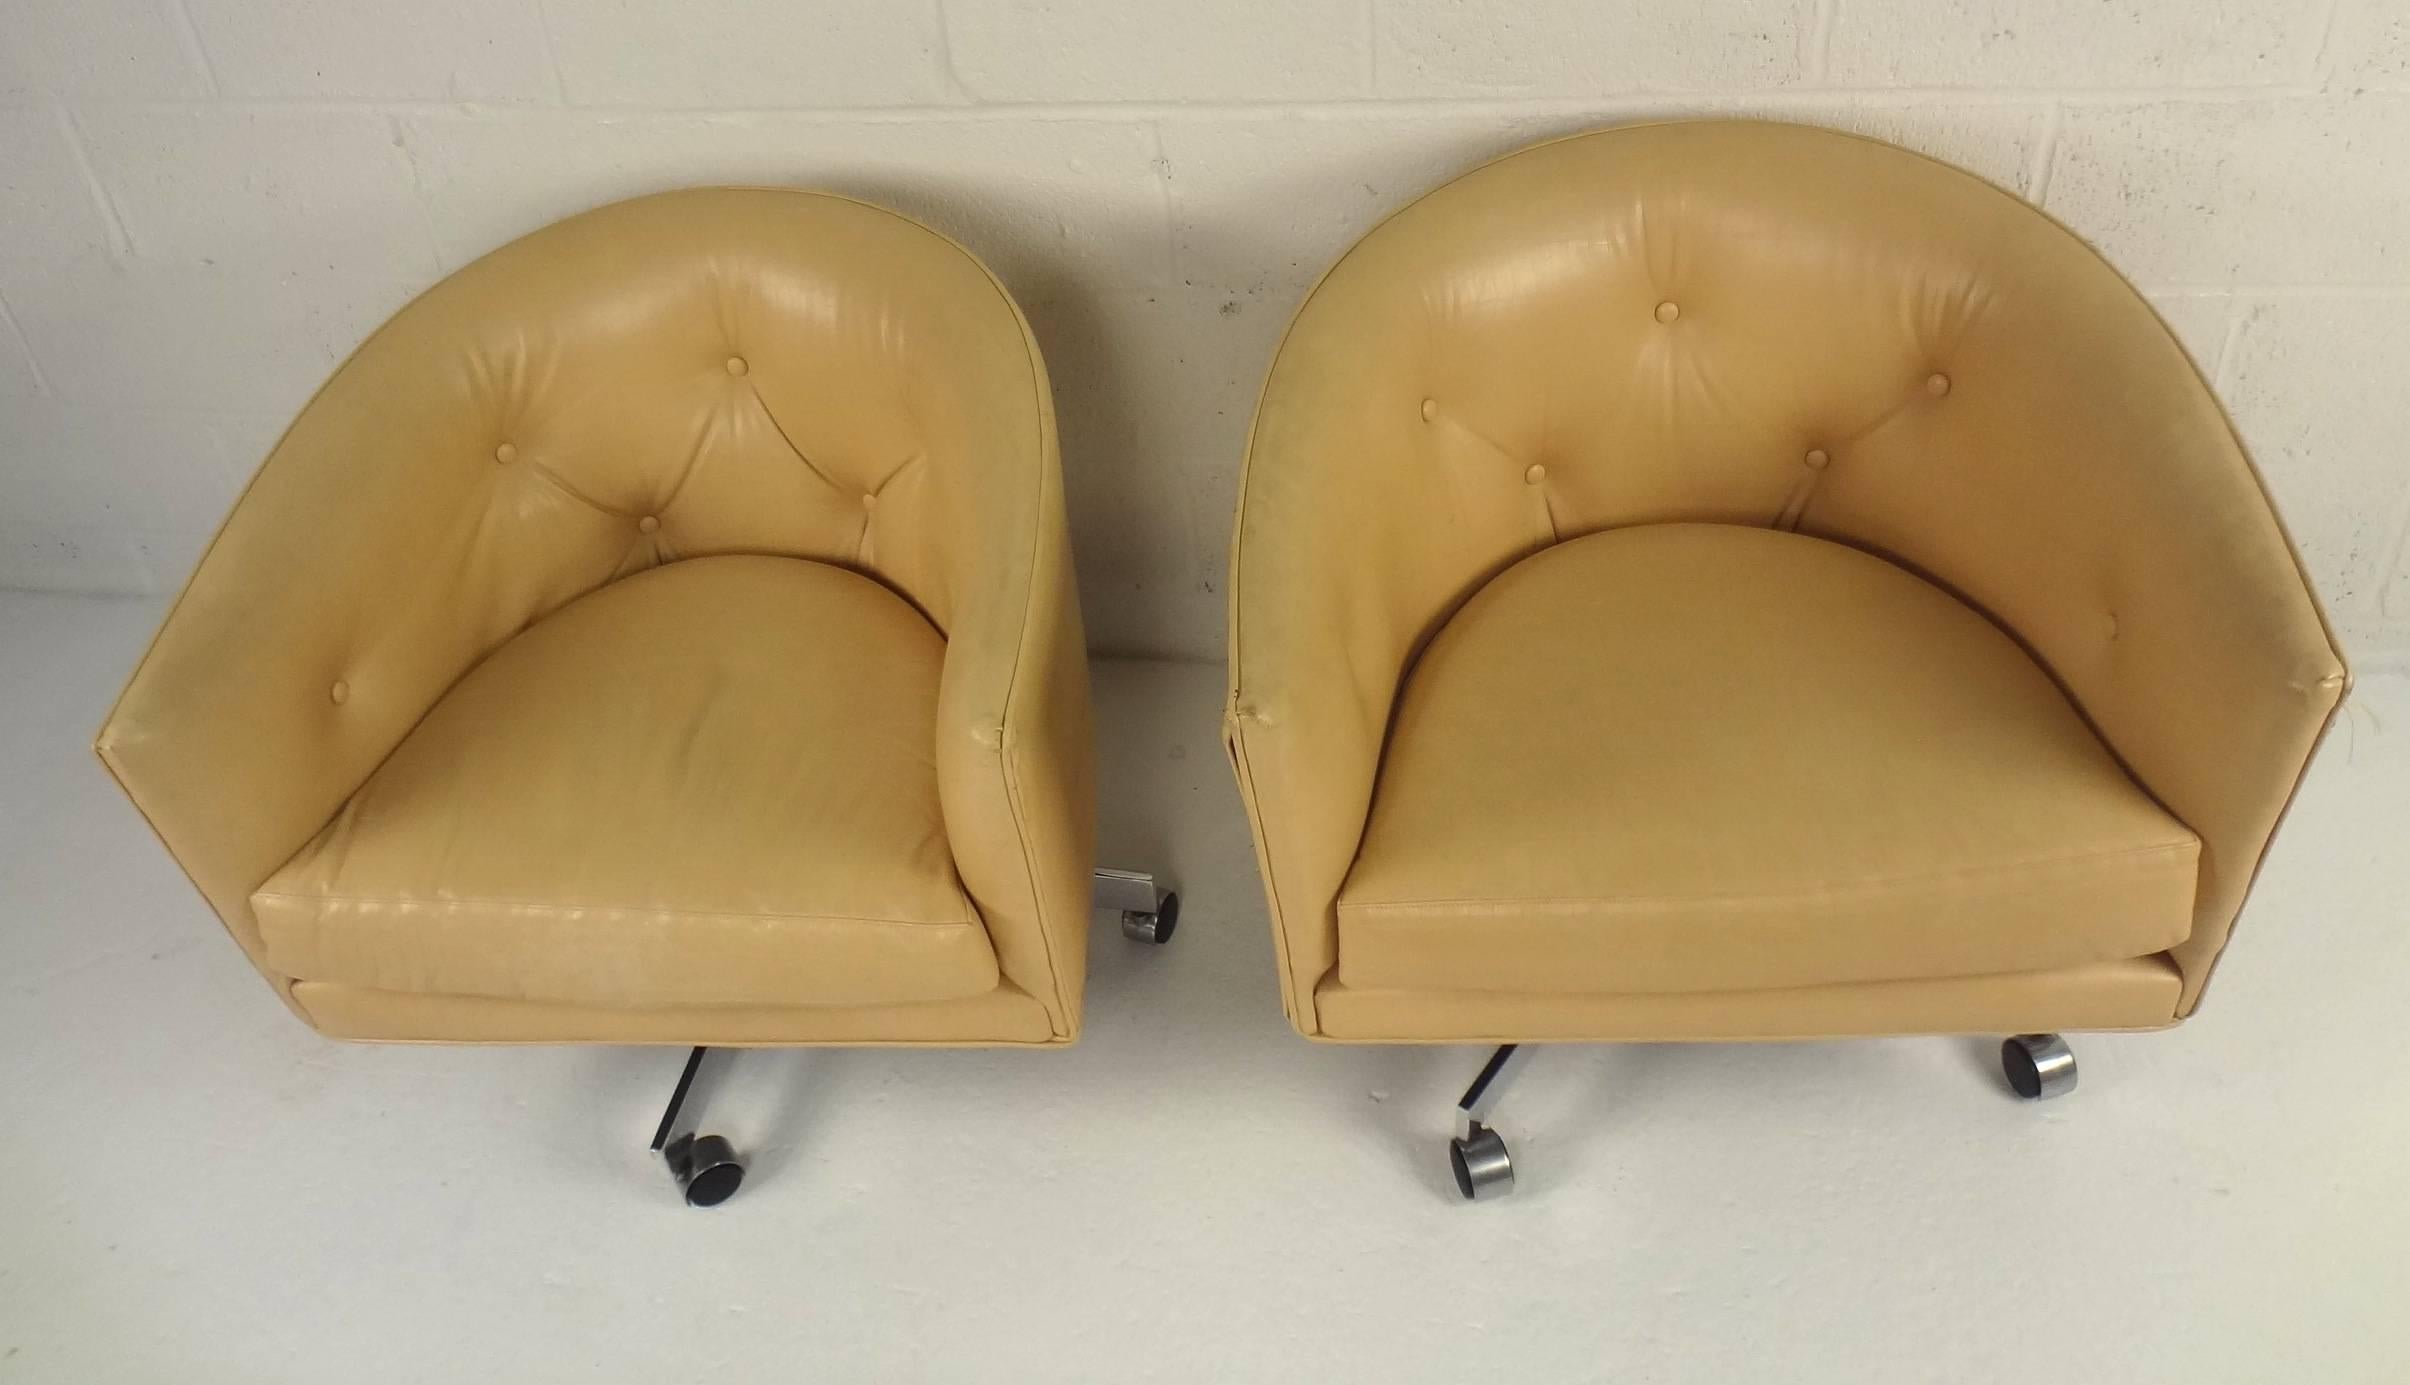 Dieses schöne Paar Vintage-Loungesessel von Milo Baughman ist drehbar und hat eine sehr stützende, umlaufende Rückenlehne. Schlankes Design mit dezent geprägtem Alligatorenleder auf dem Kunstlederbezug und breiter Sitzfläche. Das verchromte